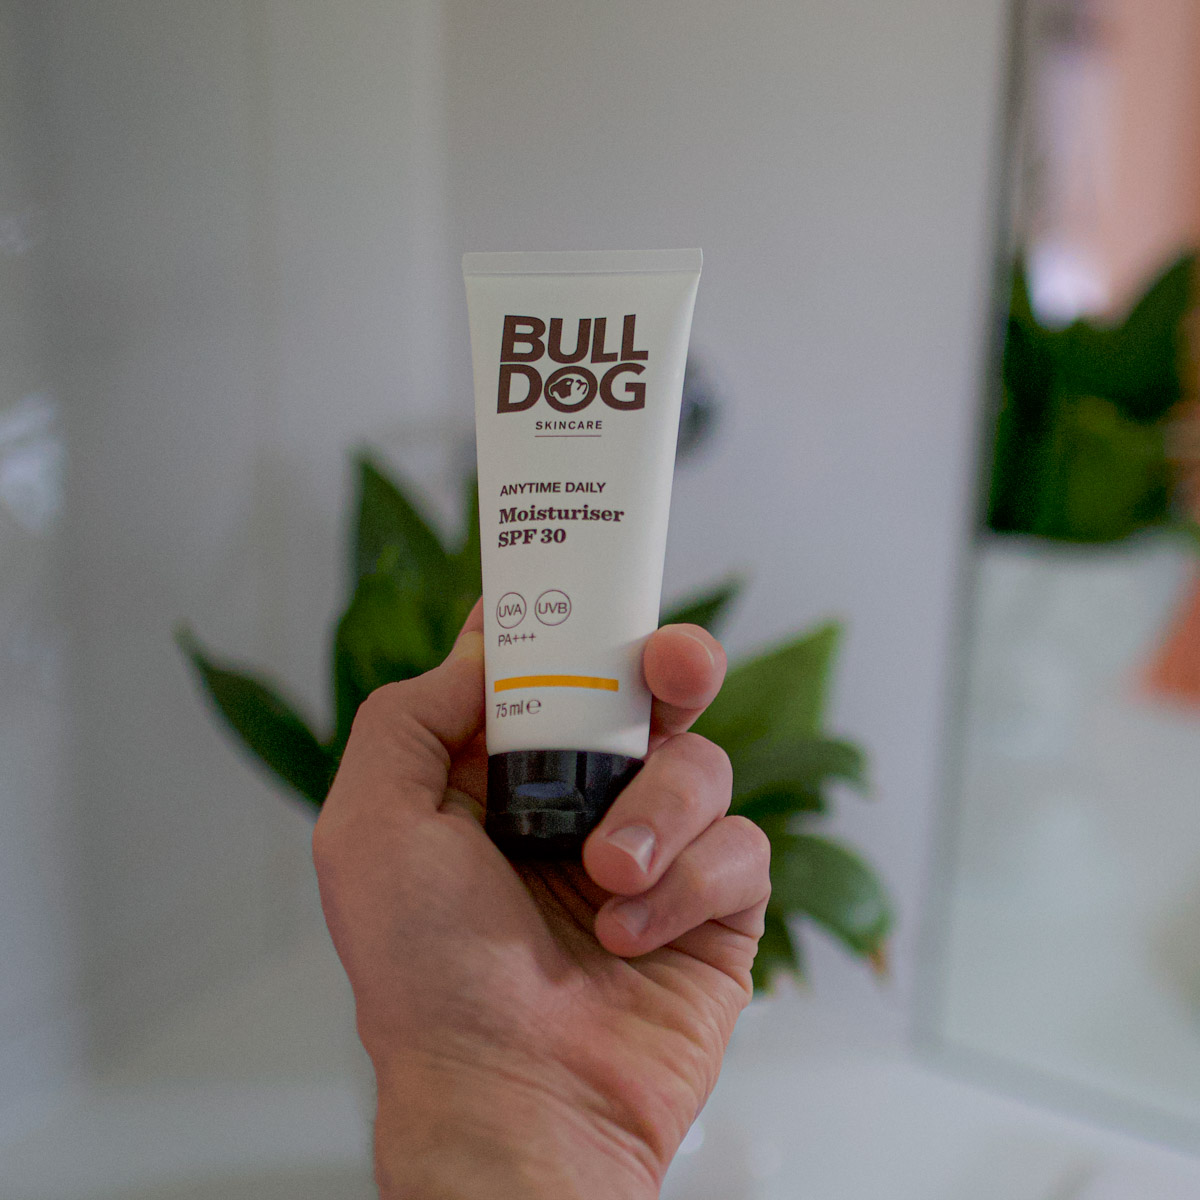 bulldog-skincare-advanced-skincare-range-anytime-daily-moisturiser-spf-30-man-for-himself-ft.jpg